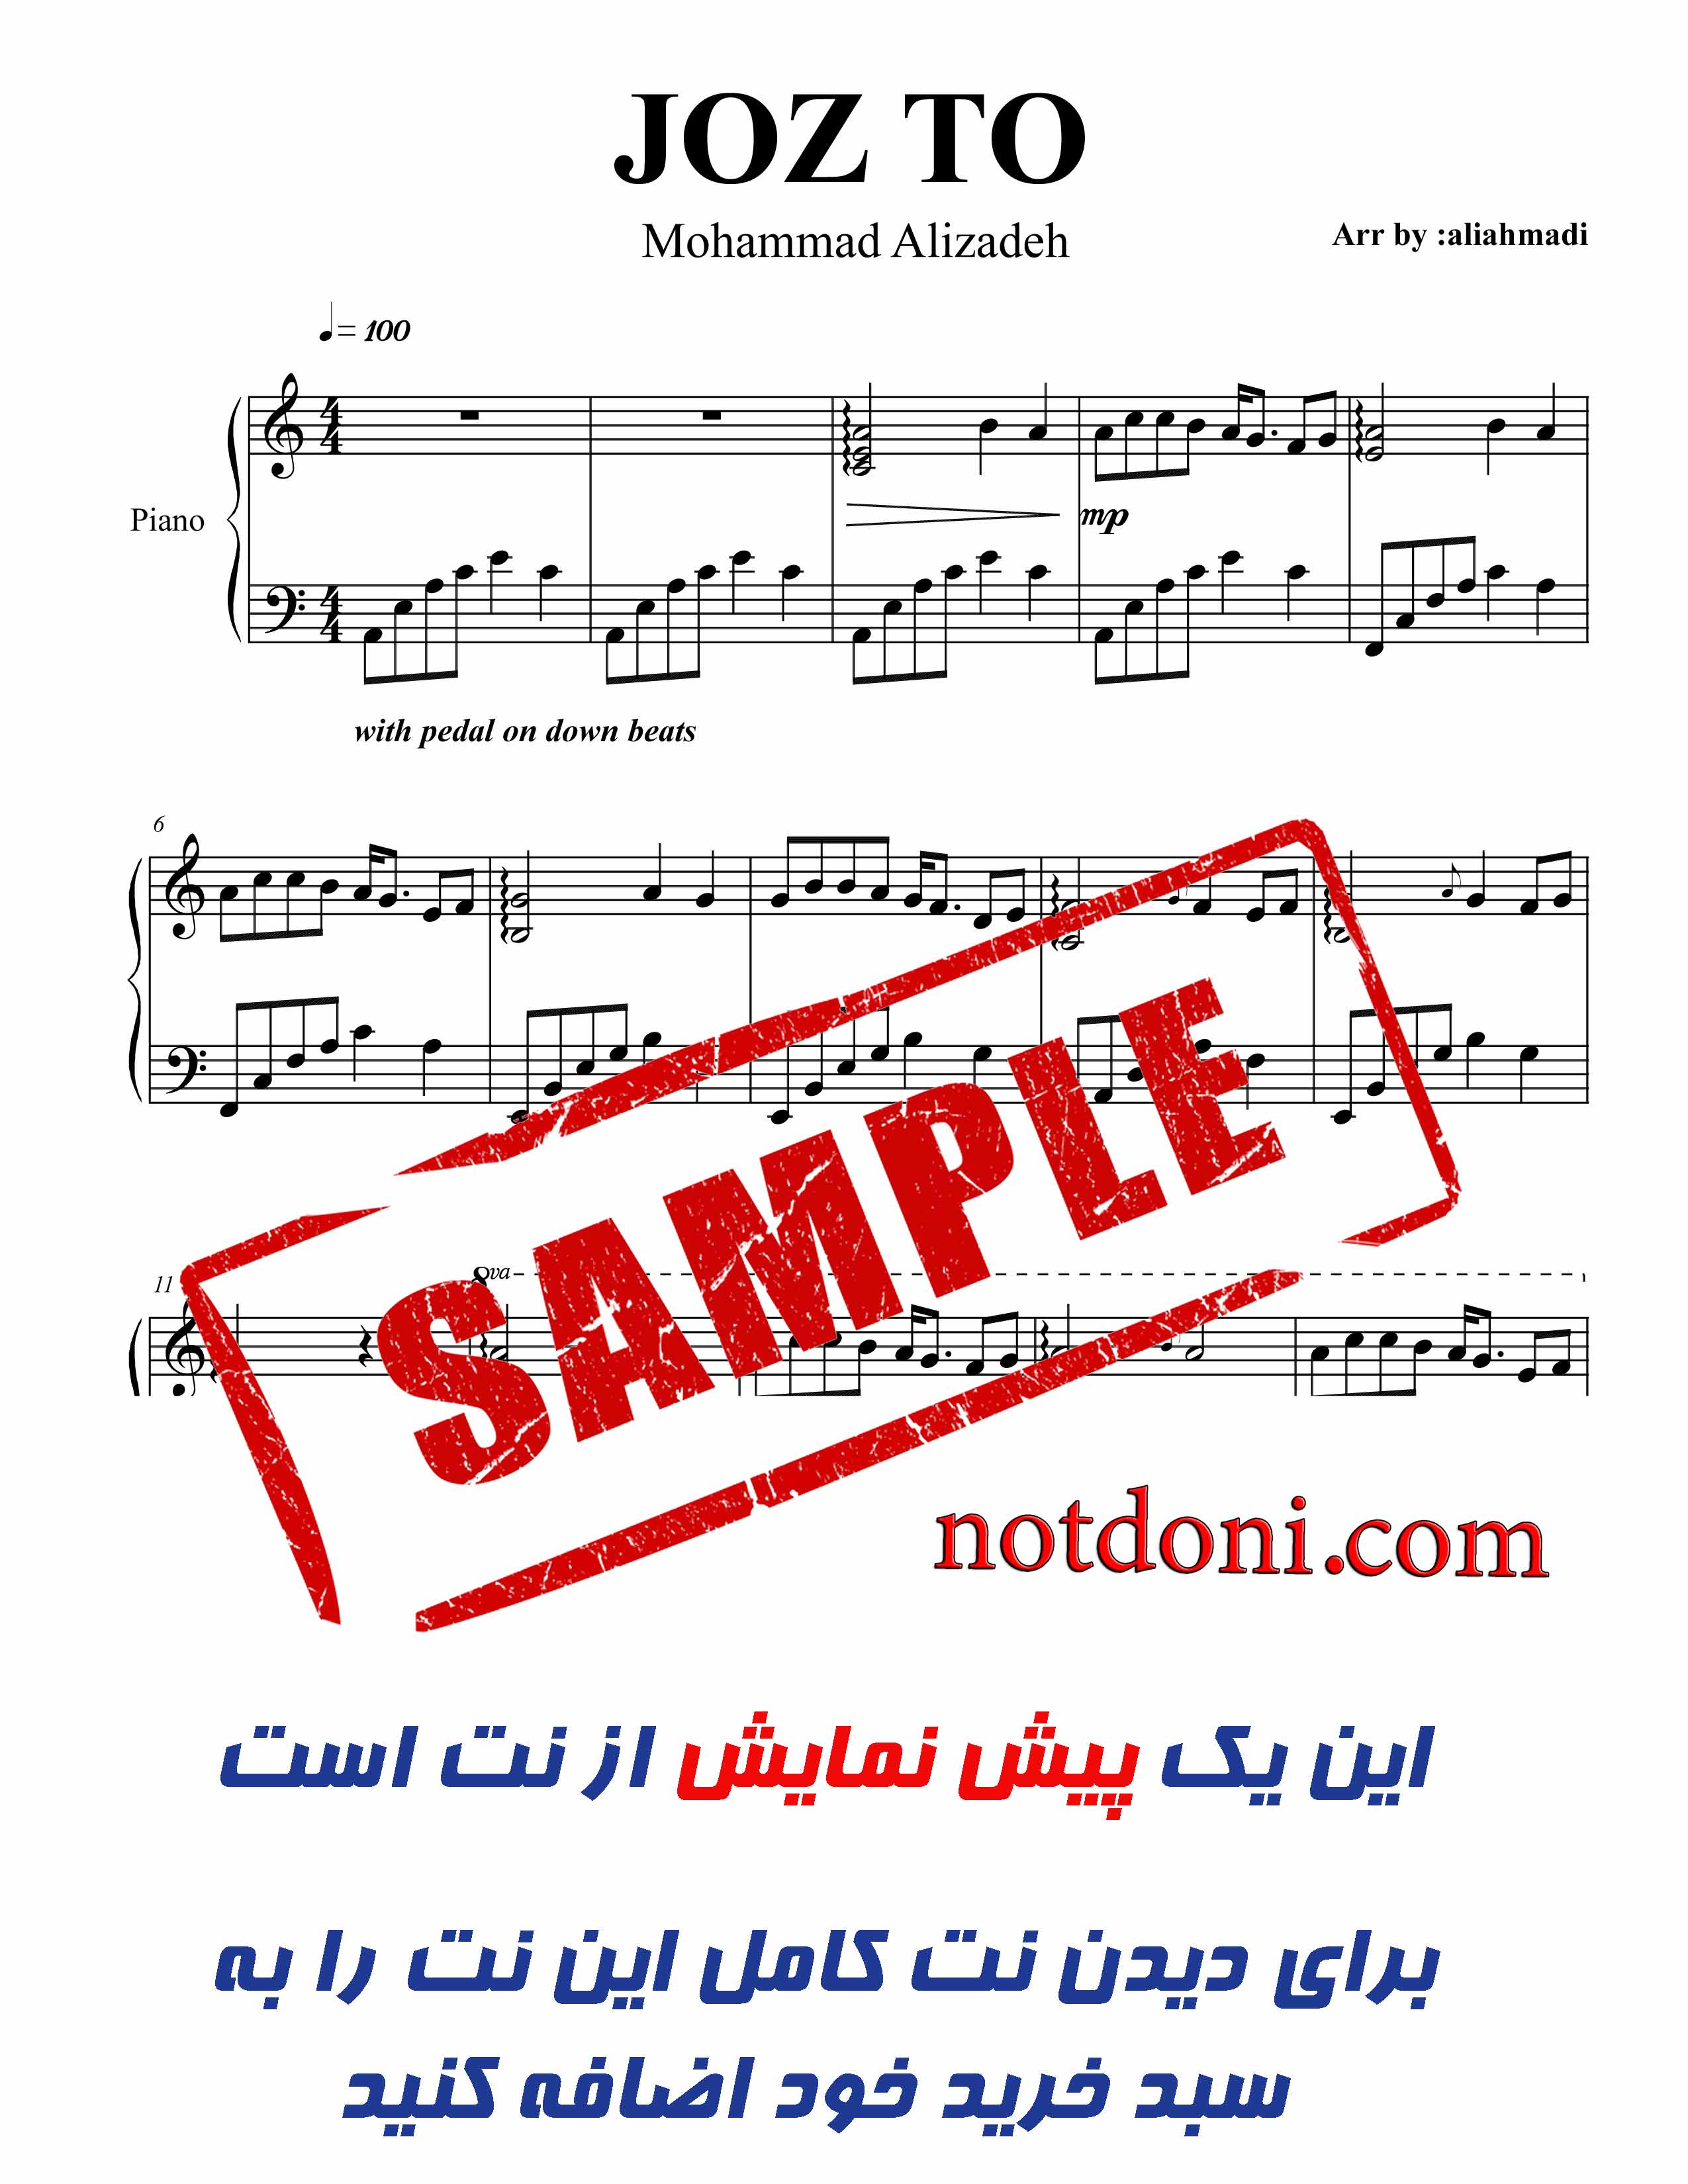 نت پیانوی آهنگ جزتو از محمد علیزاده